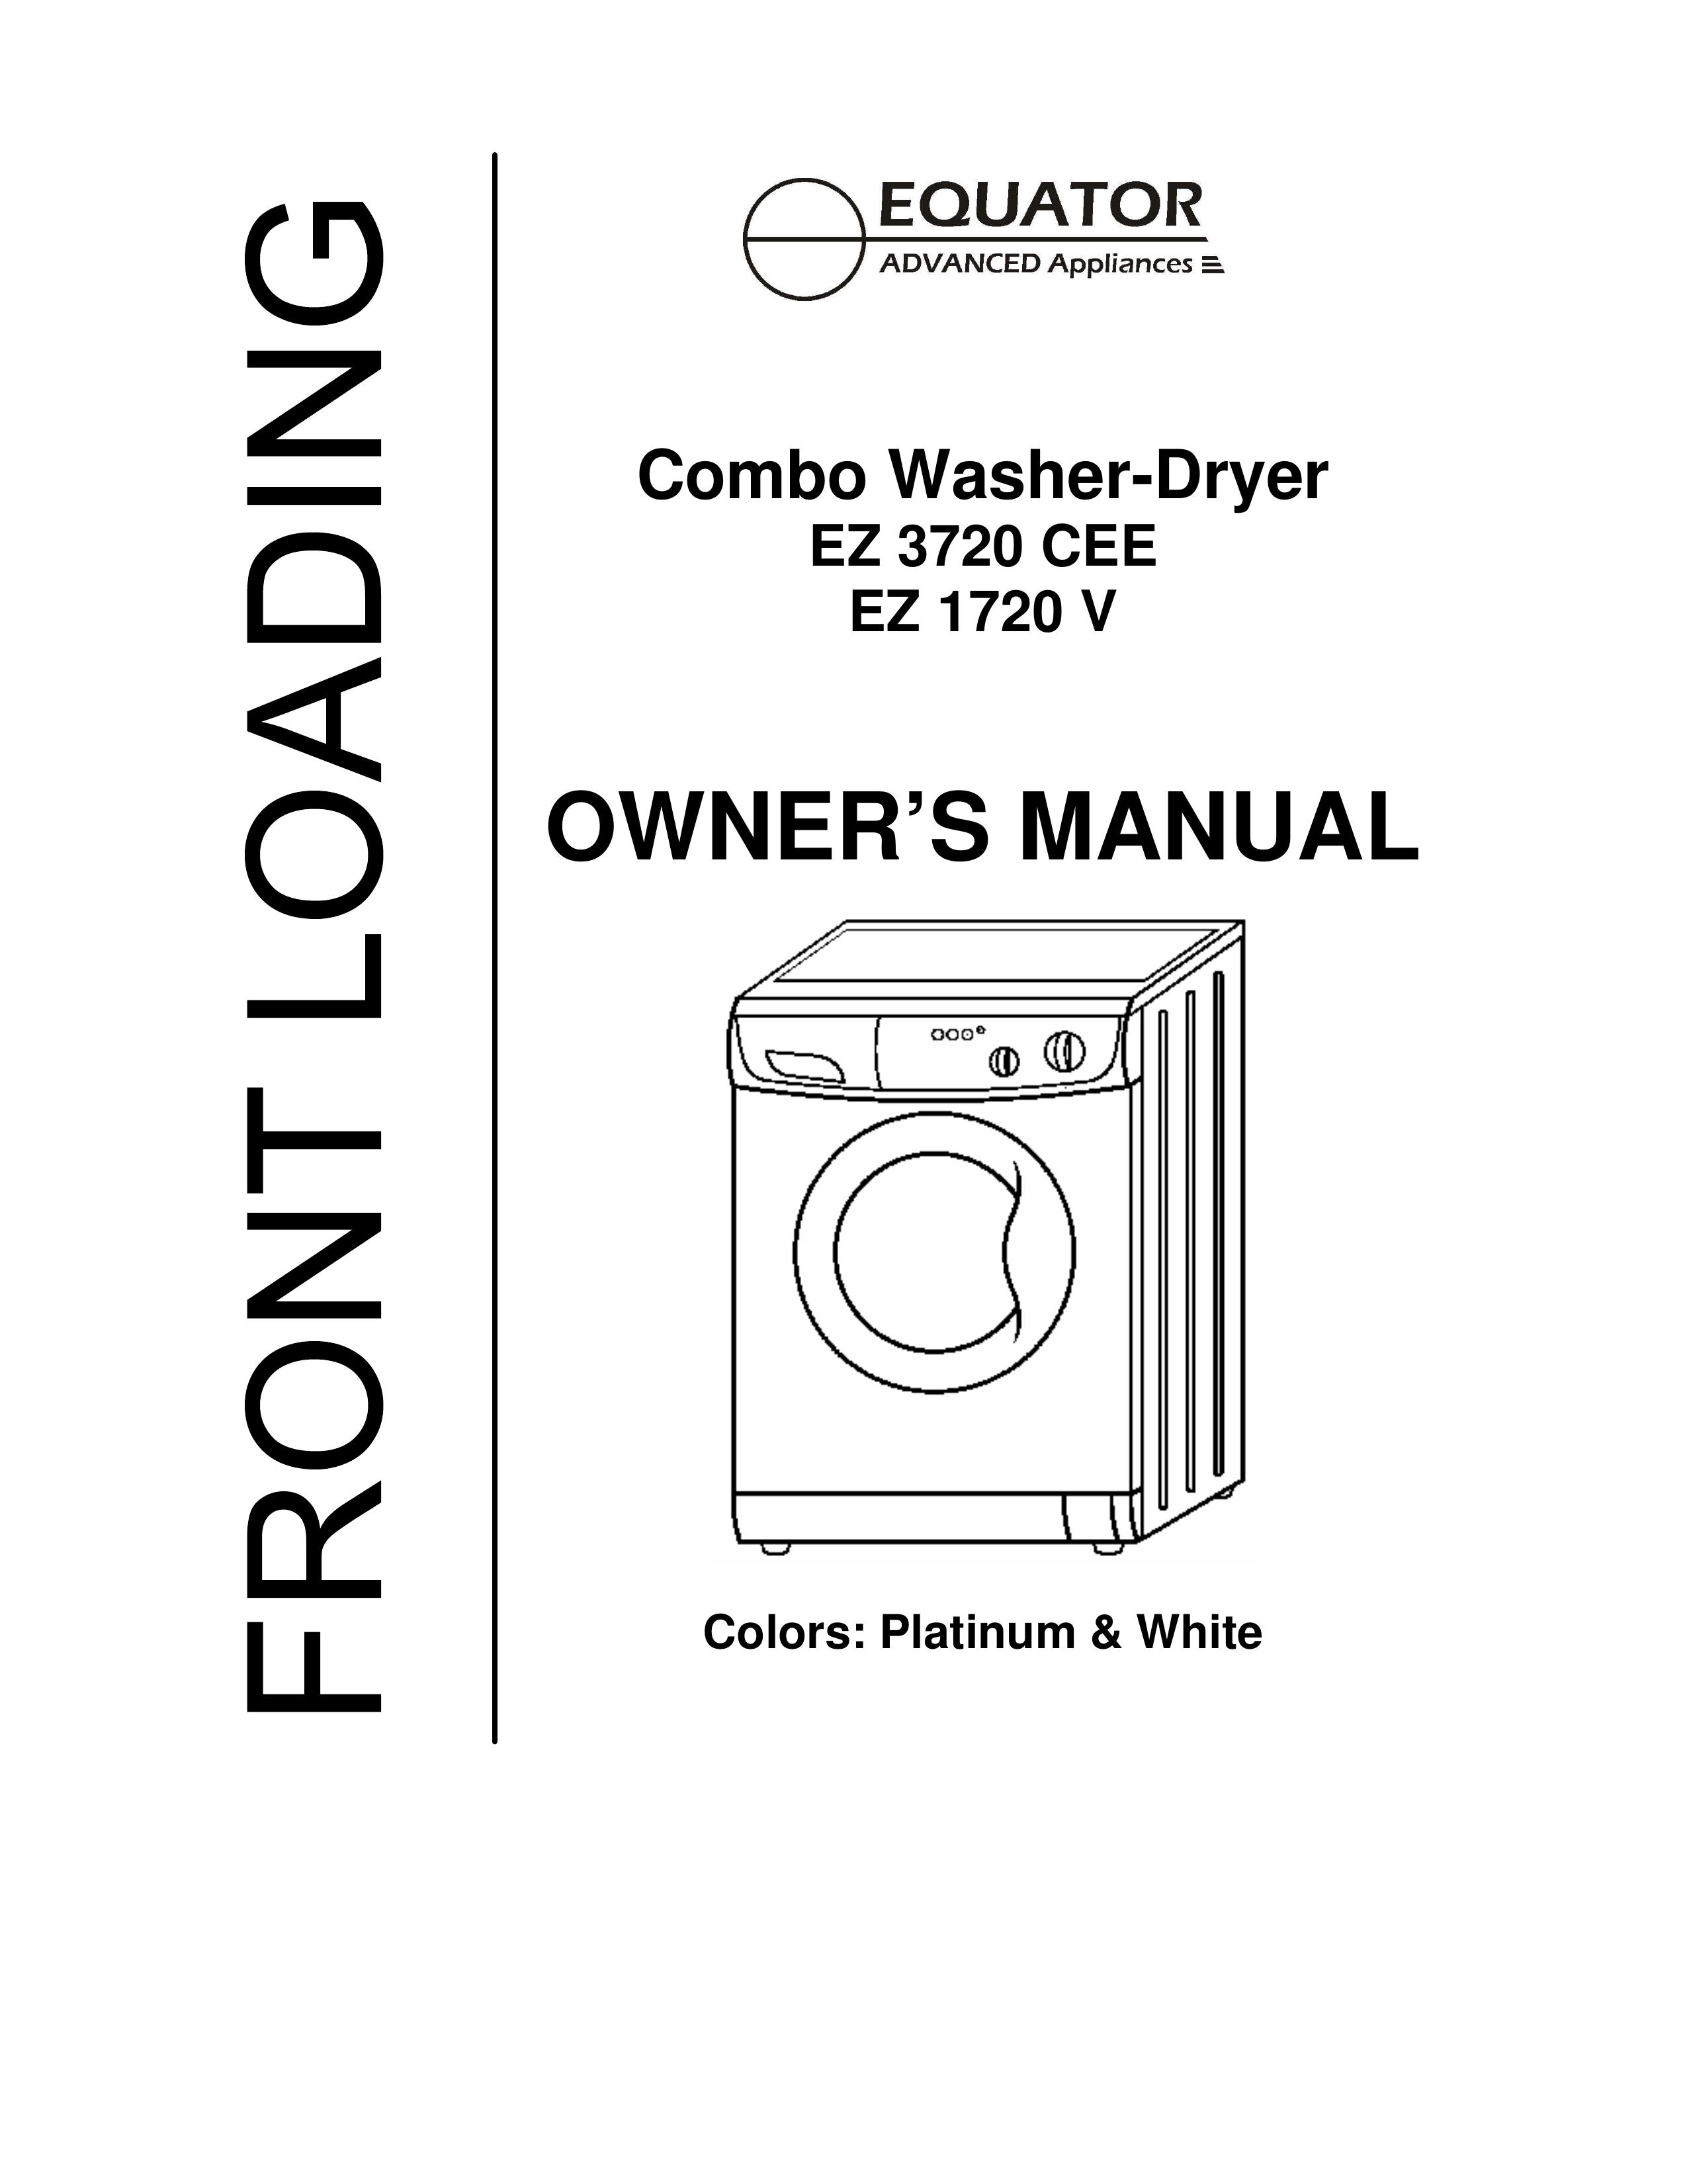 Equator EZ 1720 V Washer/Dryer User Manual